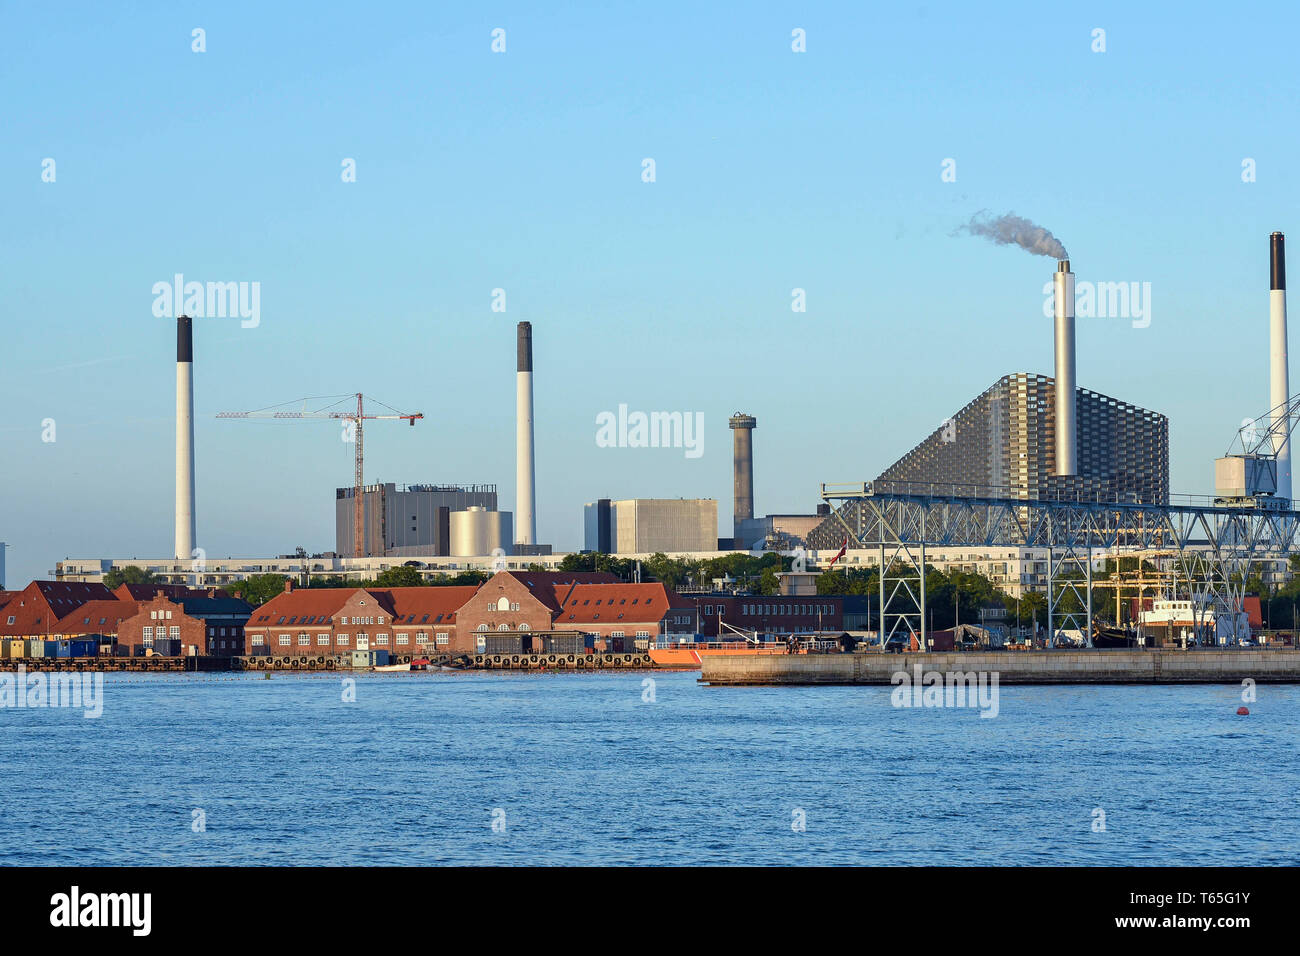 Dänemark, Kopenhagen, Amager Bakke (Amager Hill) auch bekannt als Amager Hang oder Copenhill, ist eine kombinierte Wärme- und Stromerzeugung müllheizkraftwerk Amager, Stockfoto